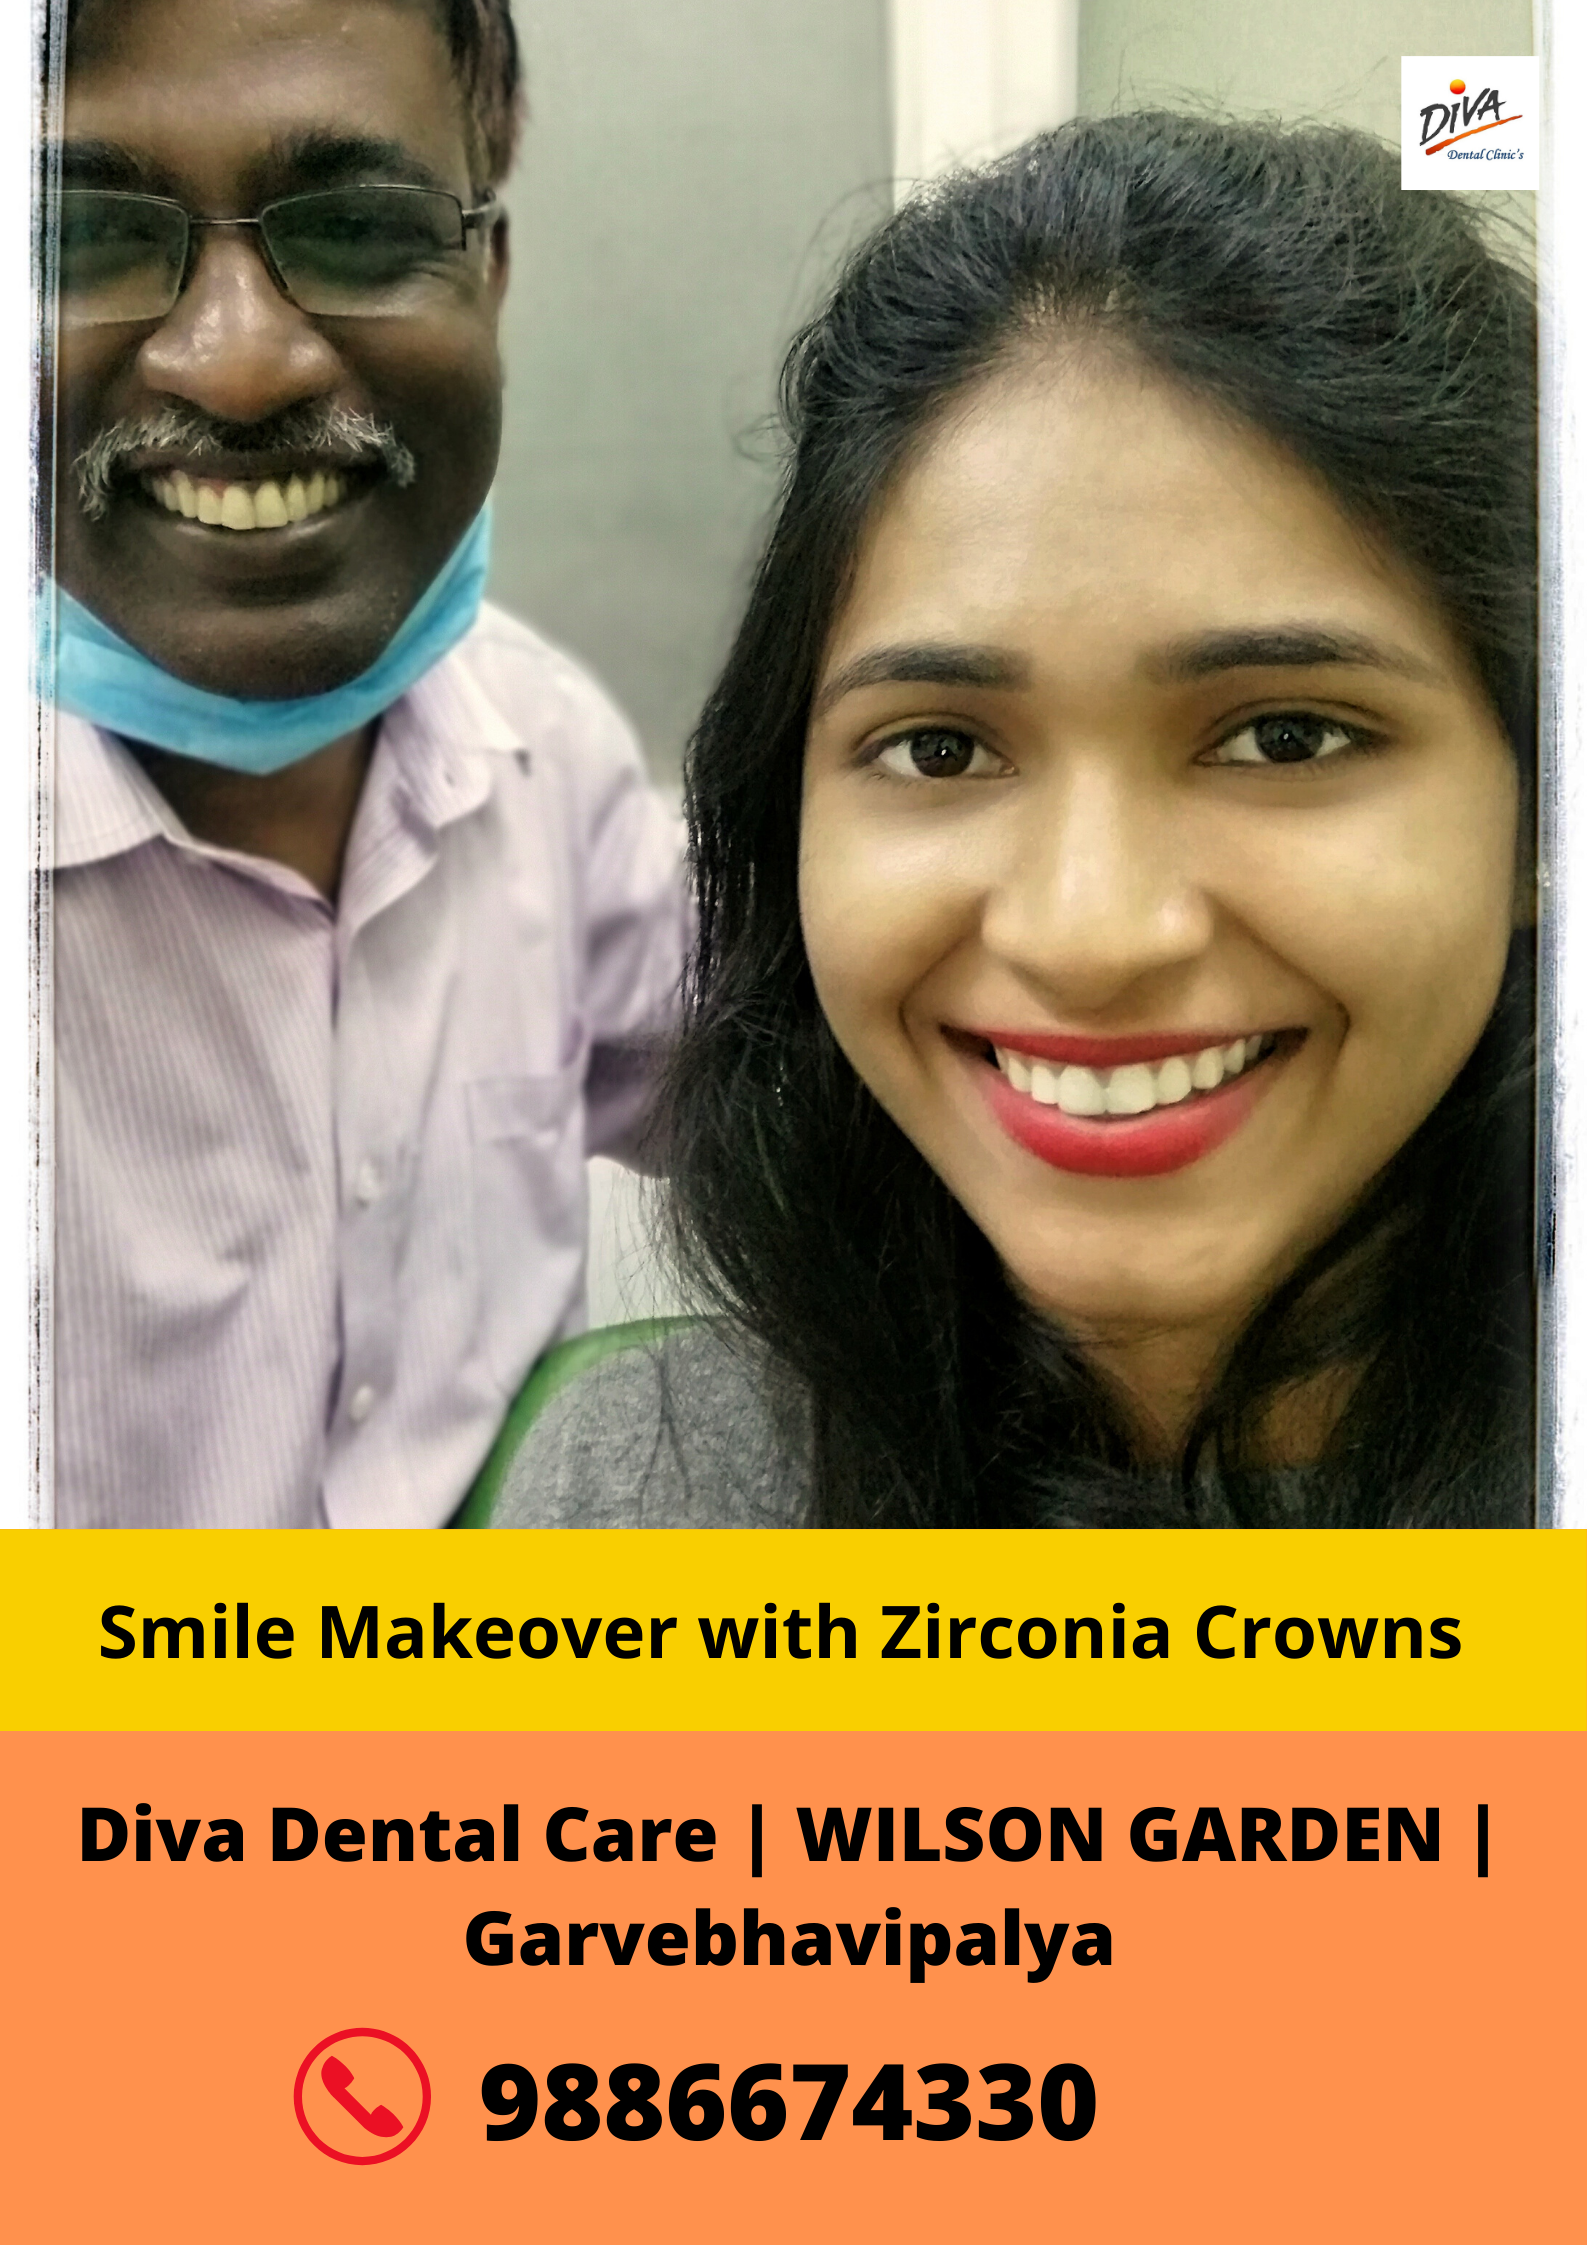 Diva Dental Care Medical Services | Dentists